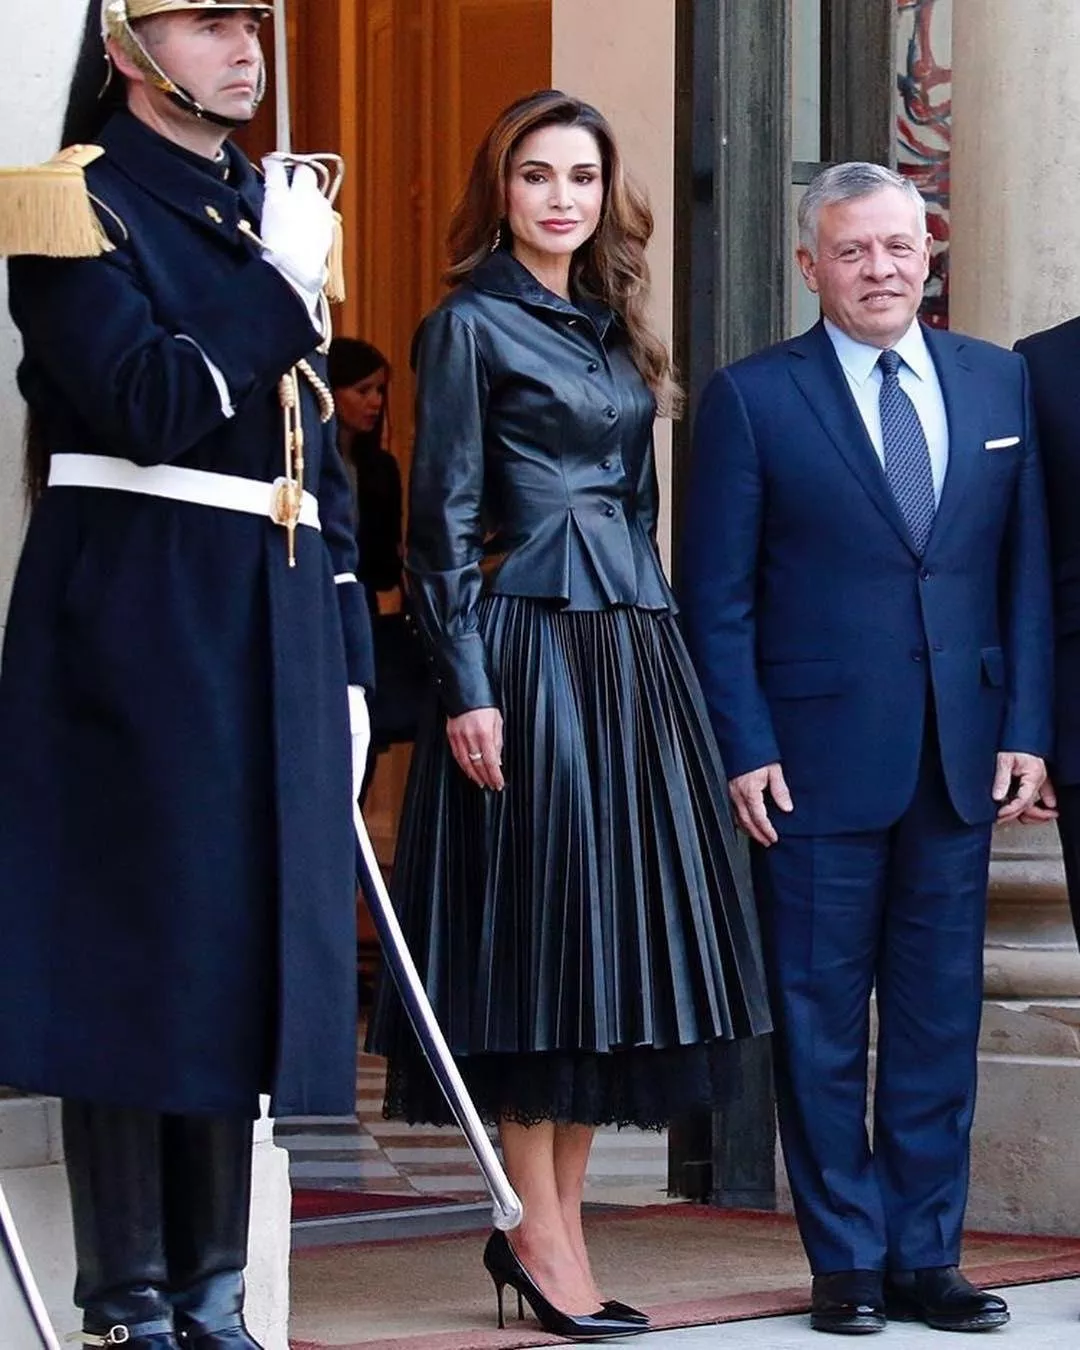 إطلالة الملكة رانيا في باريس جسّدت معنى الأناقة والرقي بإمتياز!